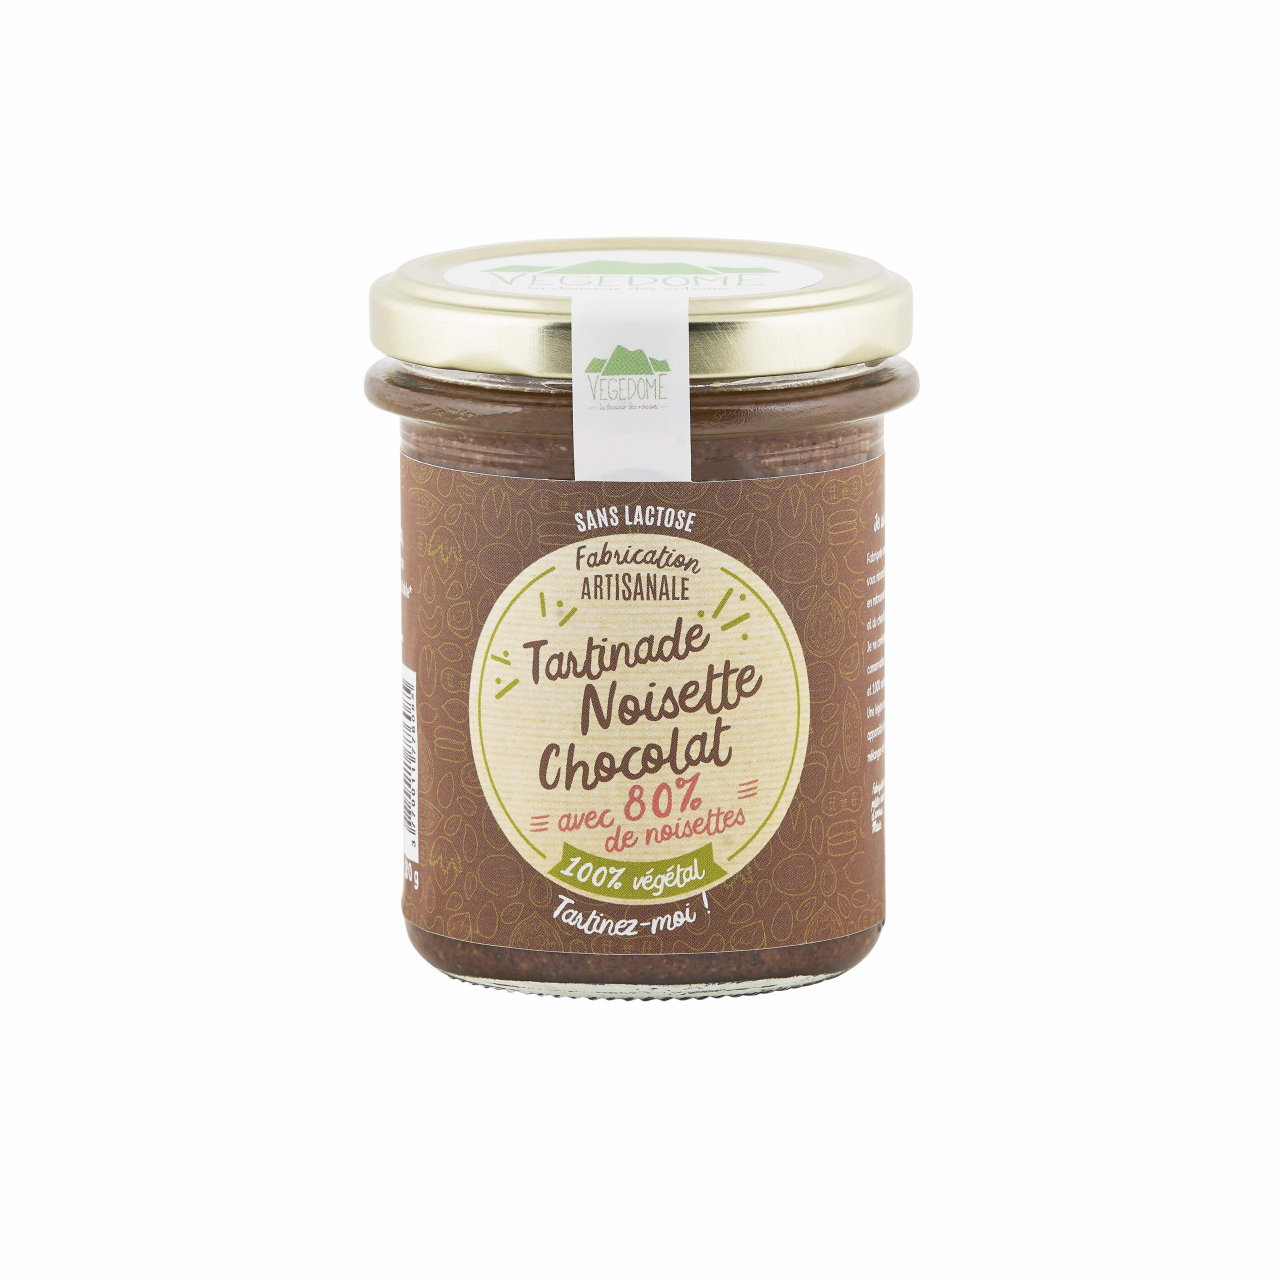 Achetez Beurre Noisette Chocolat sur Kazidomi